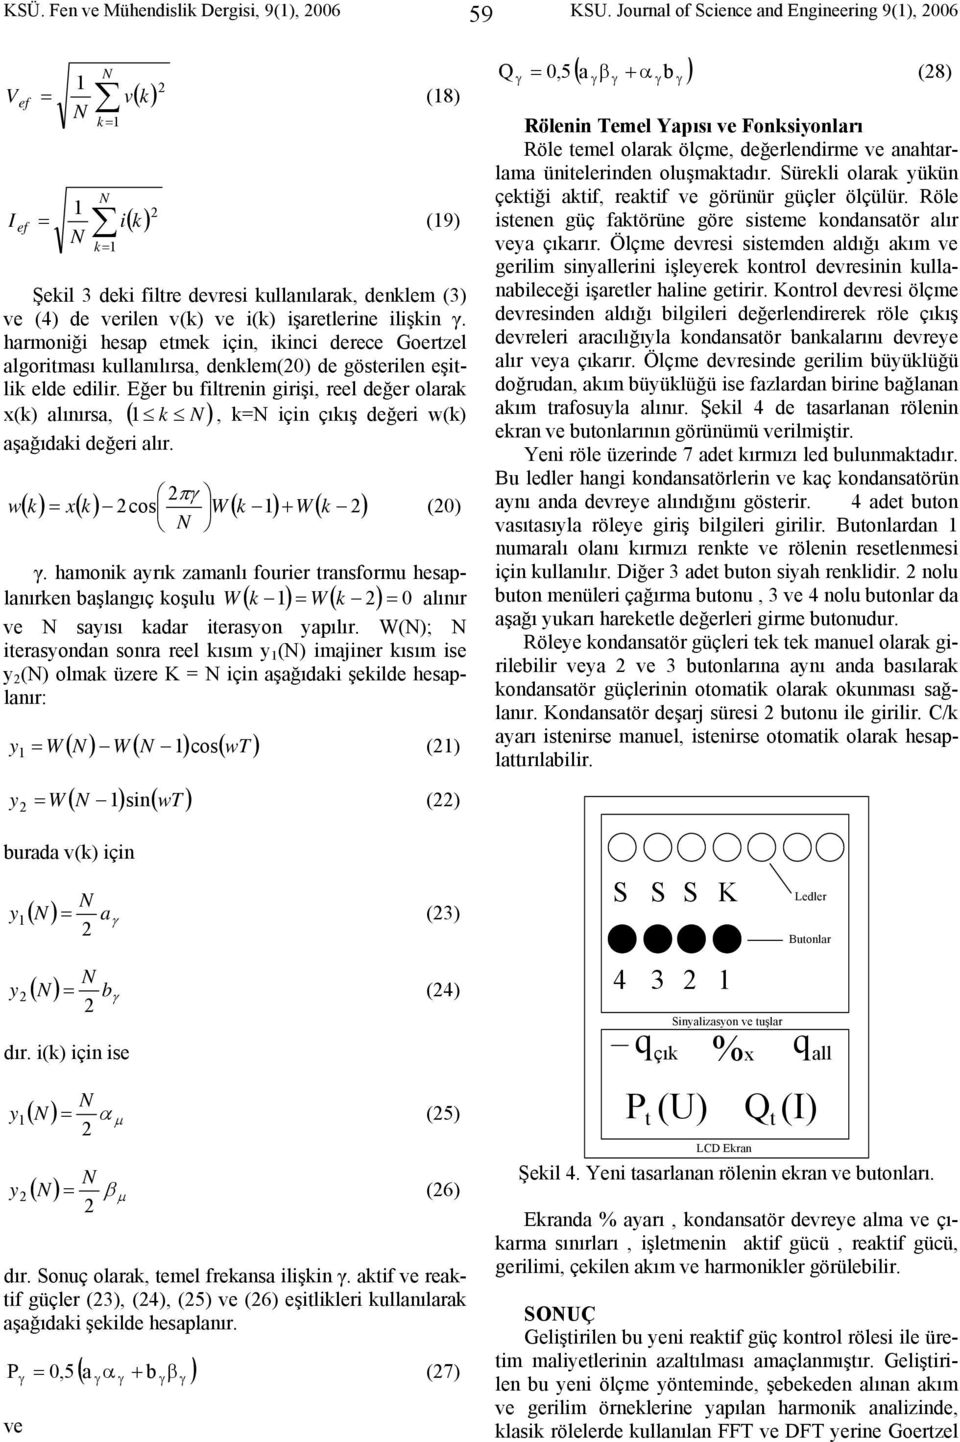 harmoniği hesap etmek için, ikinci derece Goertzel algoritması kullanılırsa, denklem(0) de gösterilen eşitlik elde edilir.